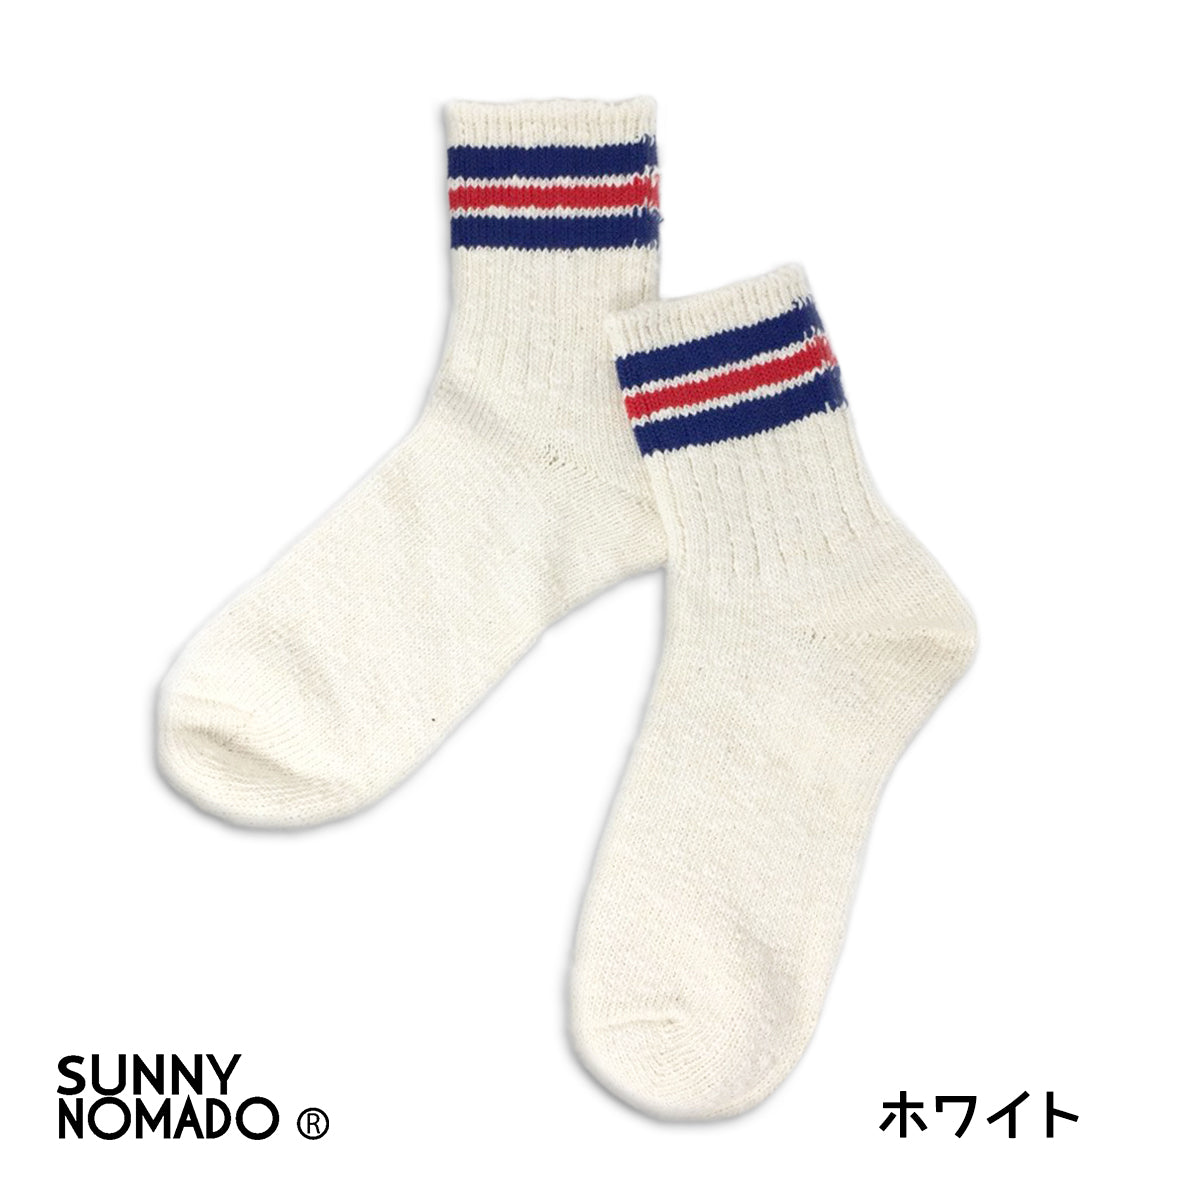 SUNNY NOMADO サニーノマド 短い靴下 スニーカーソックス OLD SCHOOL HEMP SOCKS TMSO-004